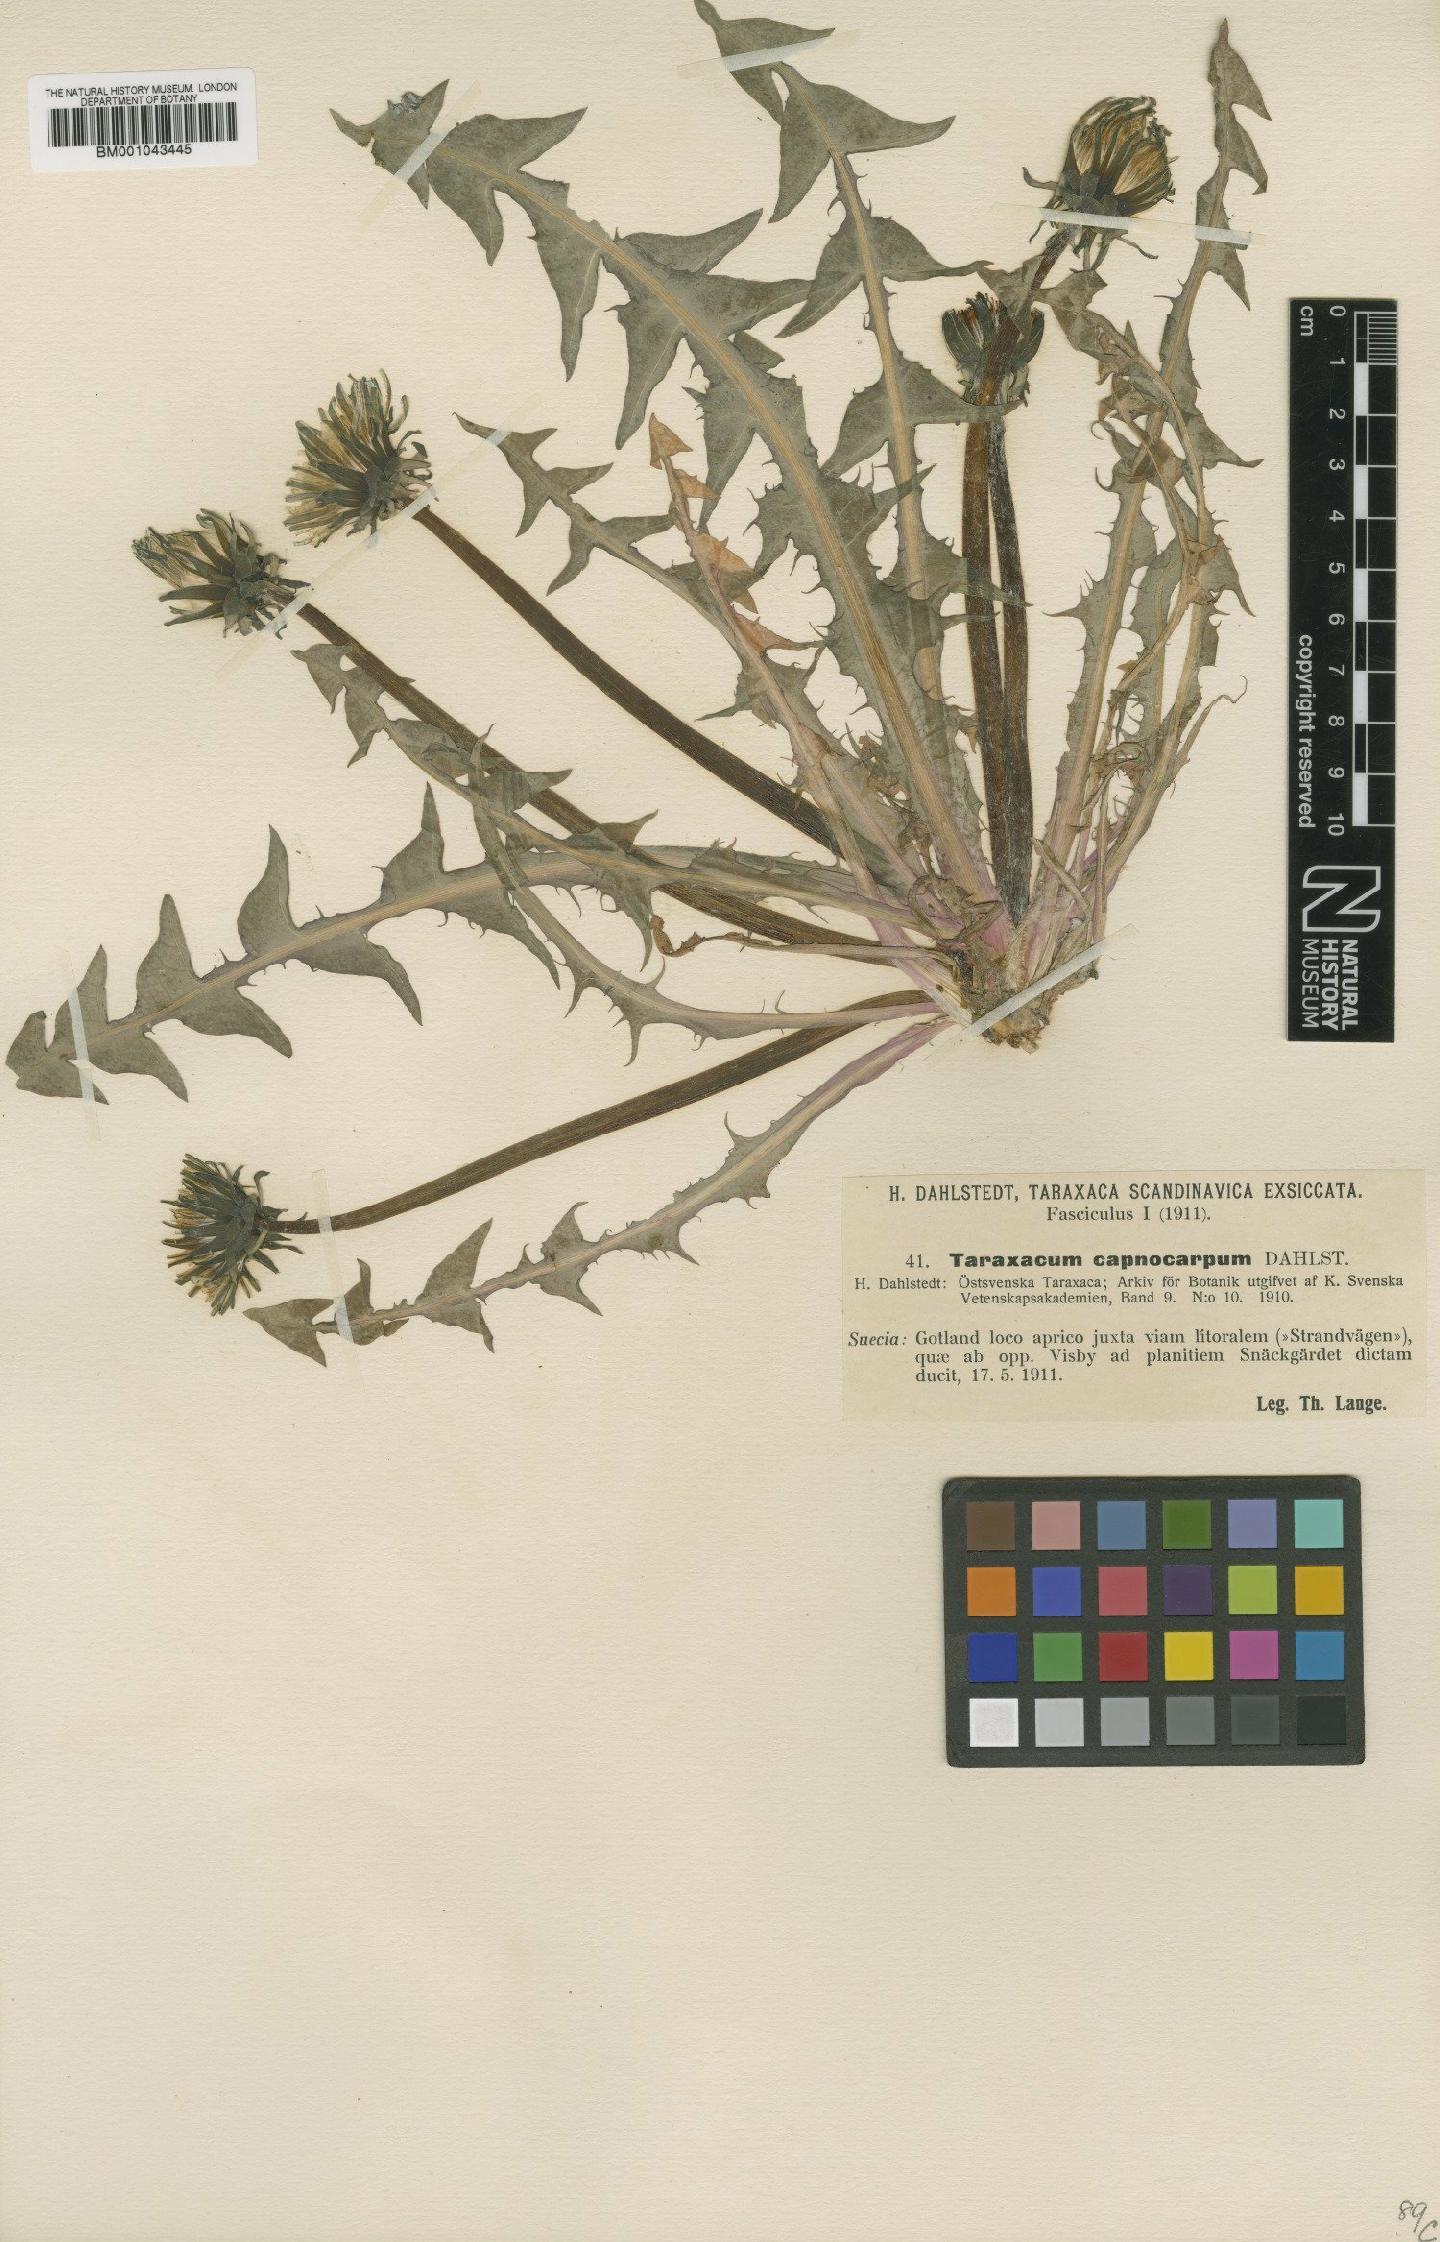 To NHMUK collection (Taraxacum capnocarpum Dahlst.; Type; NHMUK:ecatalogue:1998262)